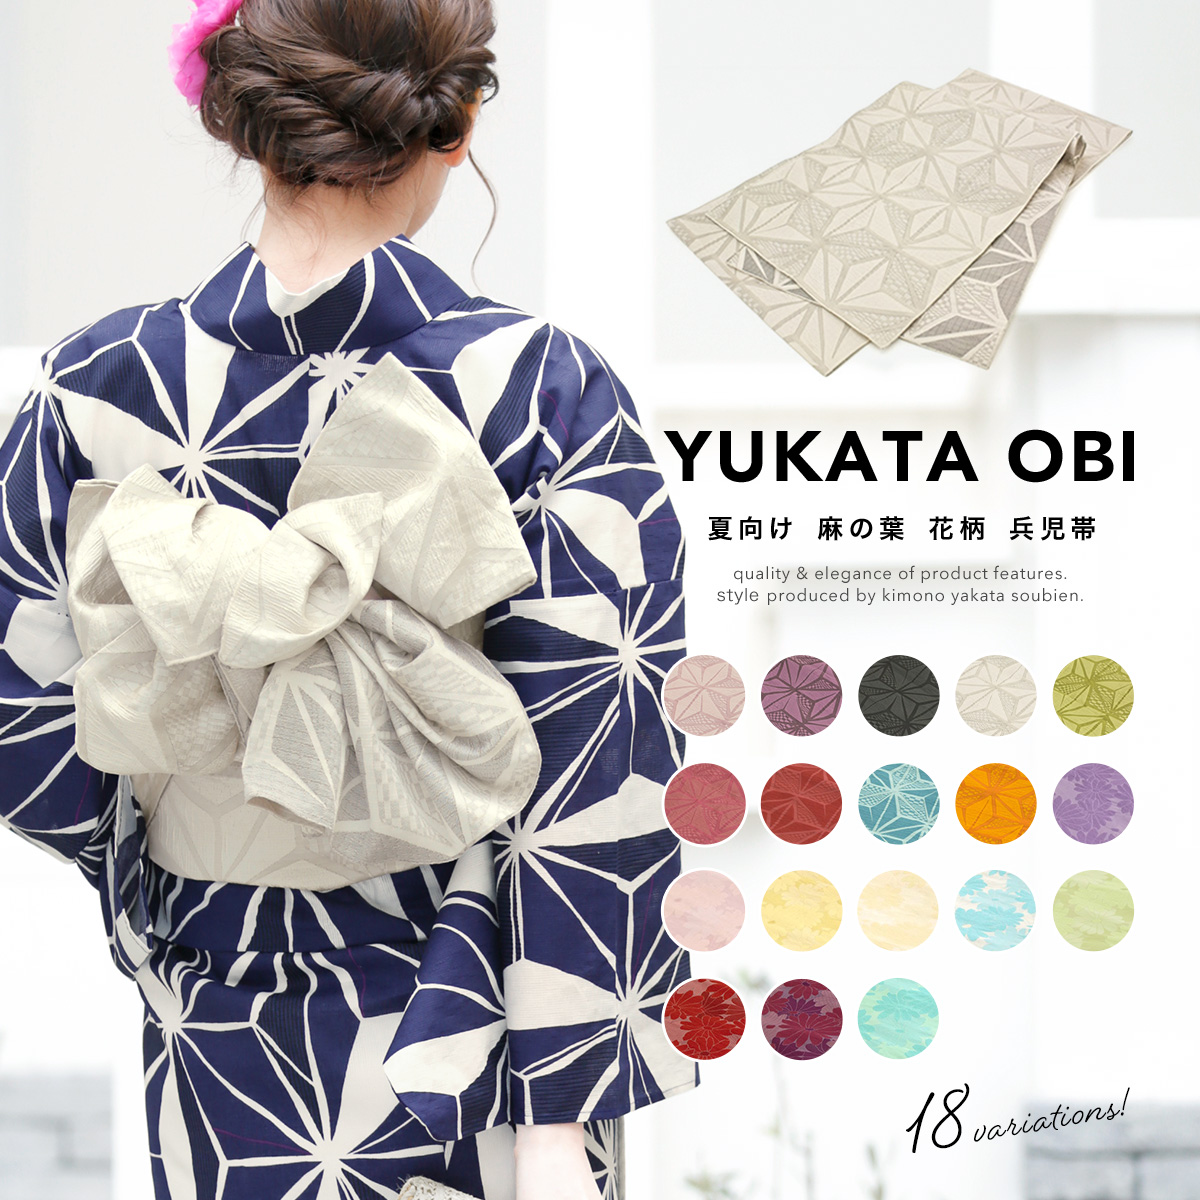  пояс хекооби взрослый ... ткань лен. лист цветочный принт .. obi лето юката предназначенный юката obi женщина obi сделано в Японии бесплатная доставка 